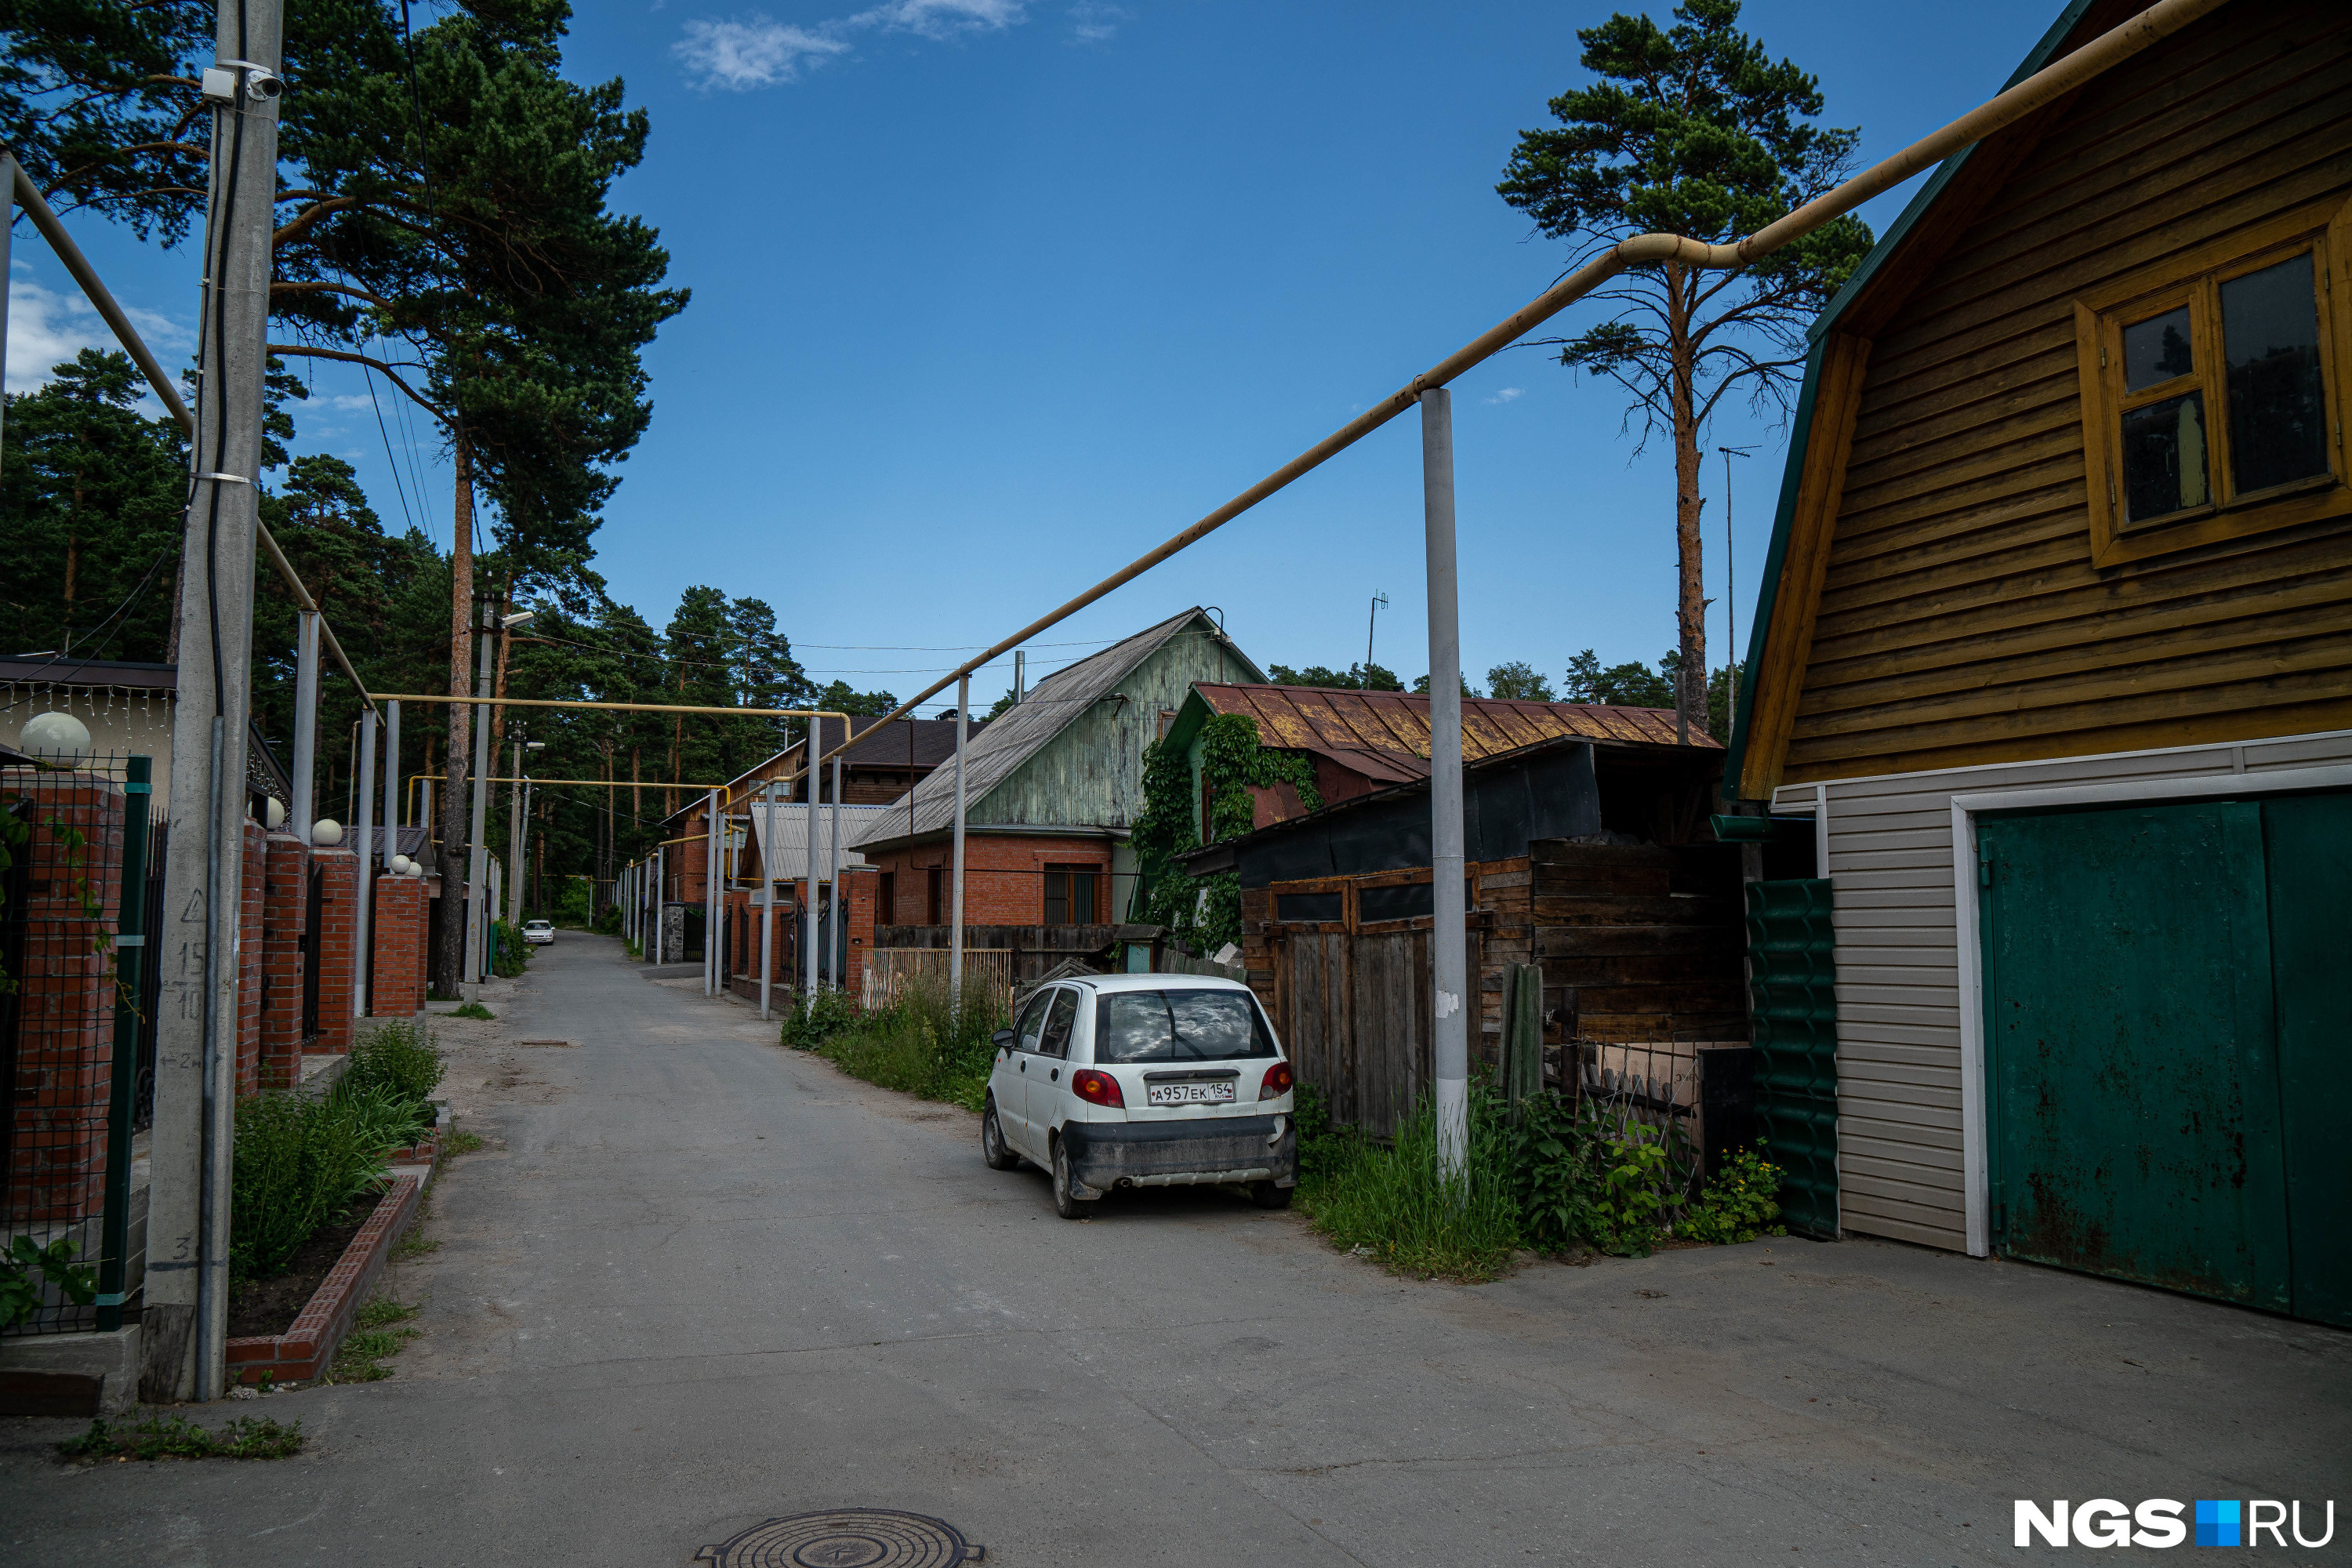 В посёлке, как и в соседнем, всего одна короткая прямая улица, но домов больше